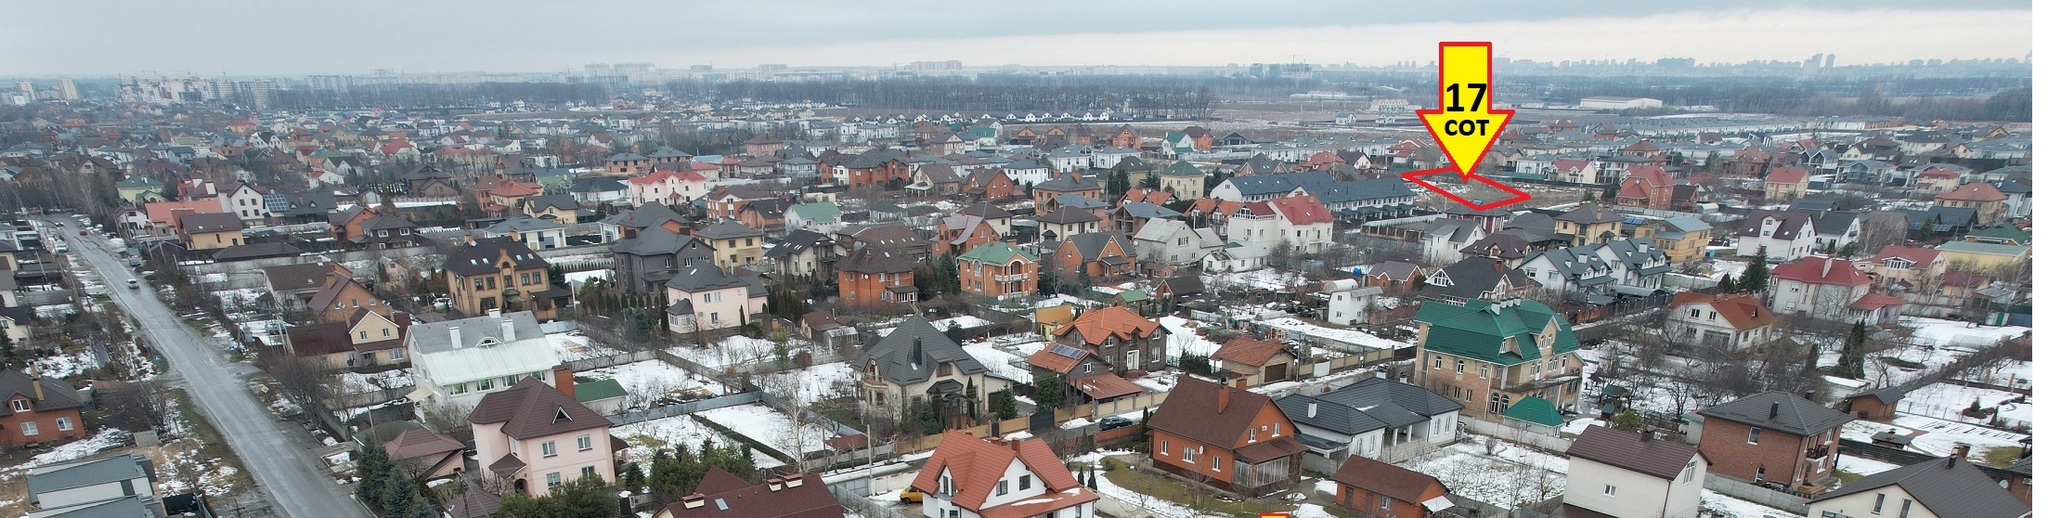 Продажа участка под индивидуальное жилое строительство 17 соток, Гатненский просп.